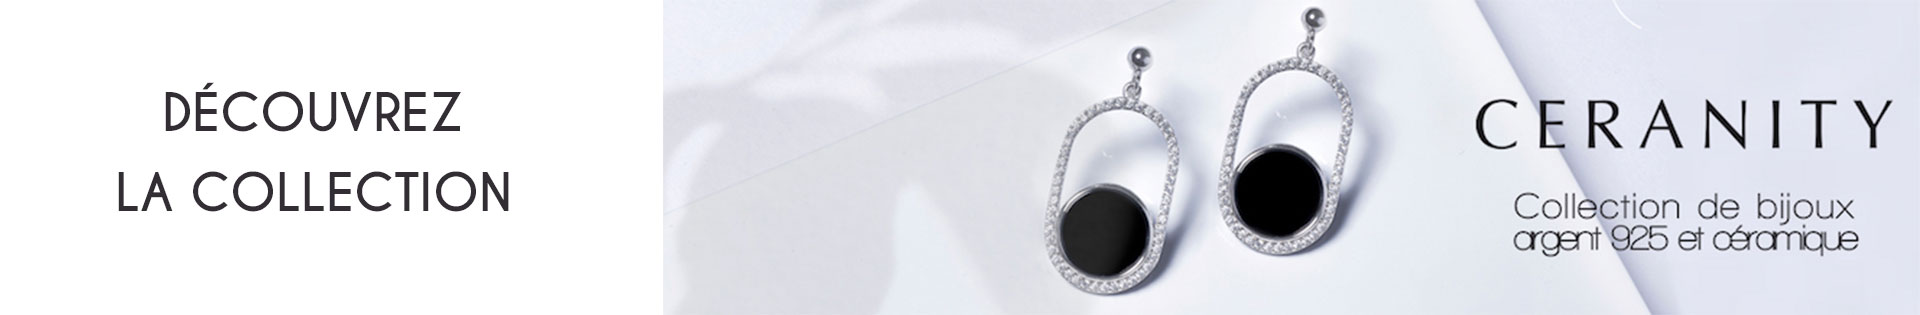 Boucles d'oreille - Ceranity Silver - Argent - or 375 millièmes